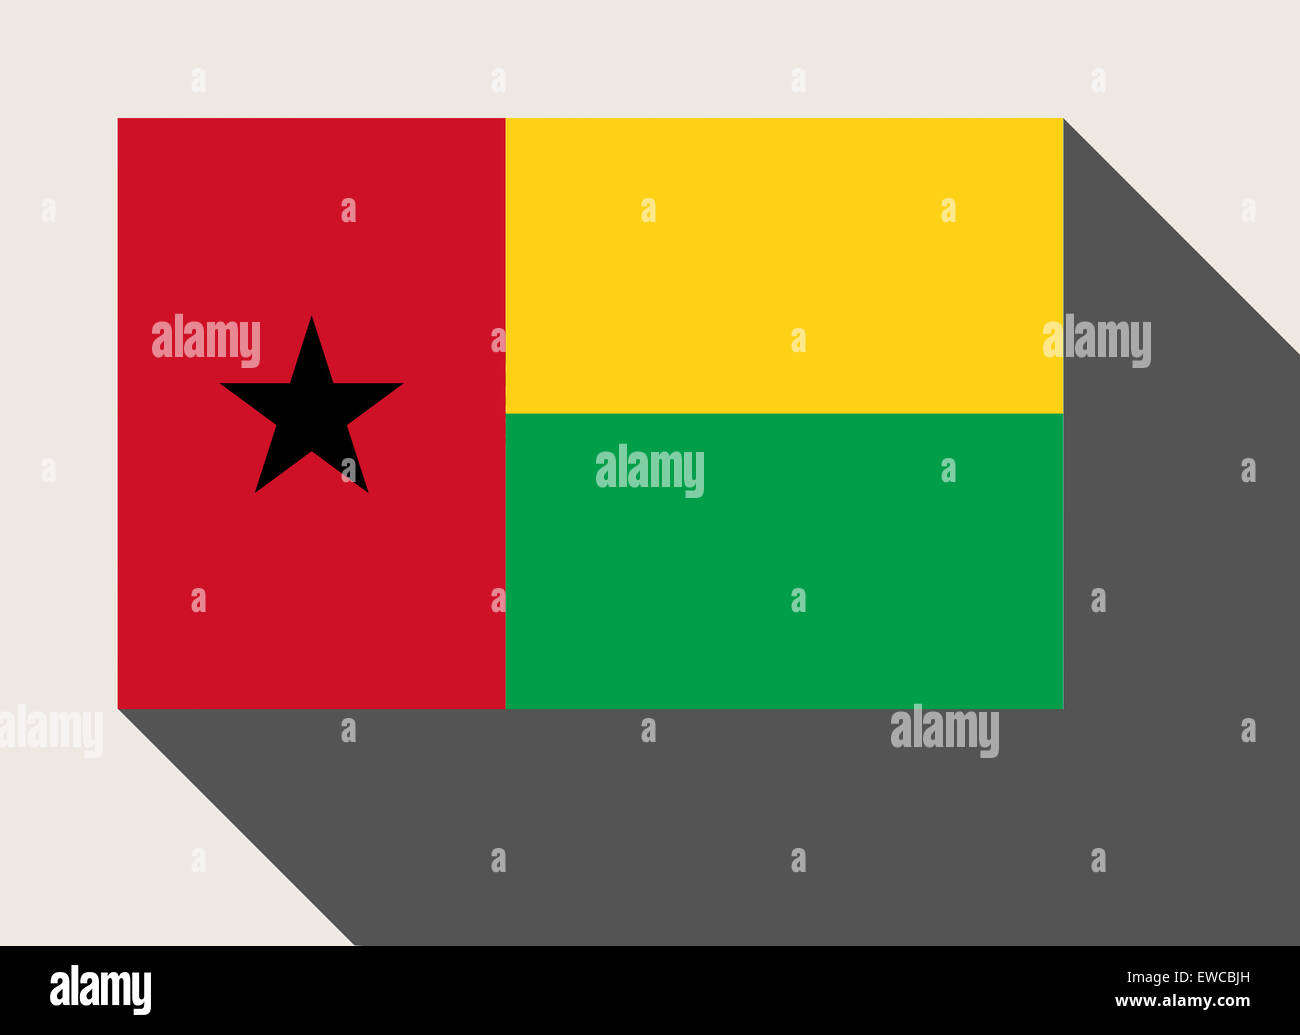 Guinée Conakry drapeau, bannière couleurs nationales Bissau' T-shirt Homme